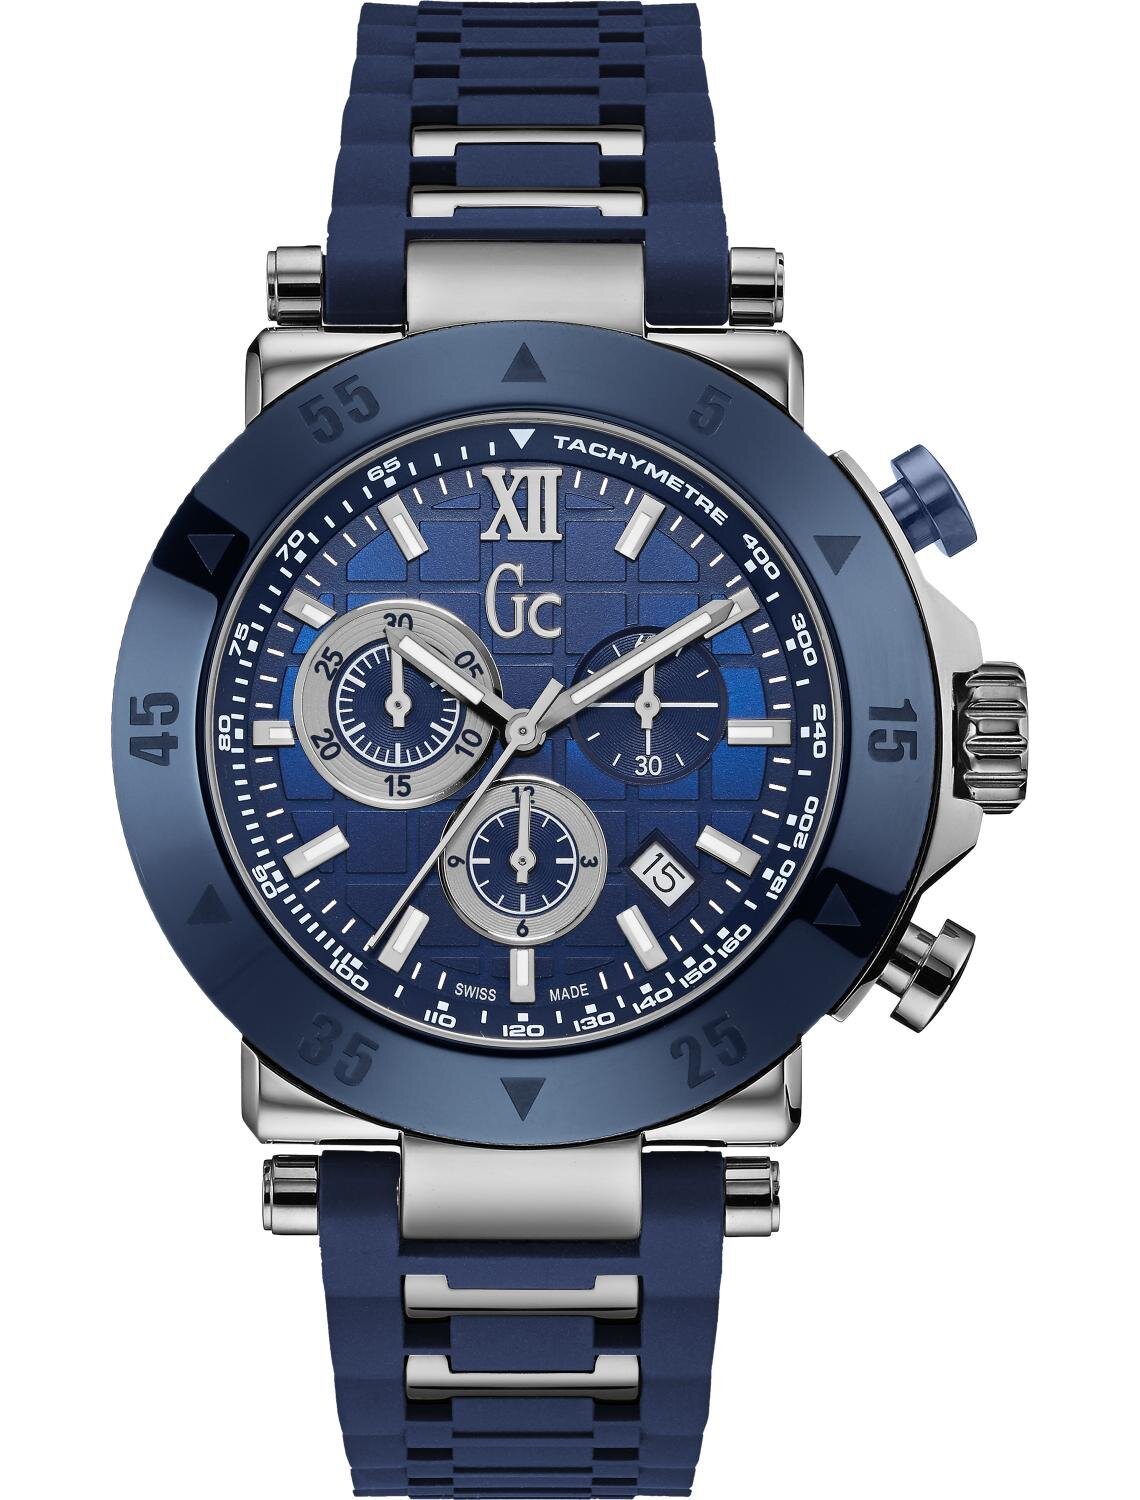 Vyriškas laikrodis GC X90025G7S kaina | pigu.lt